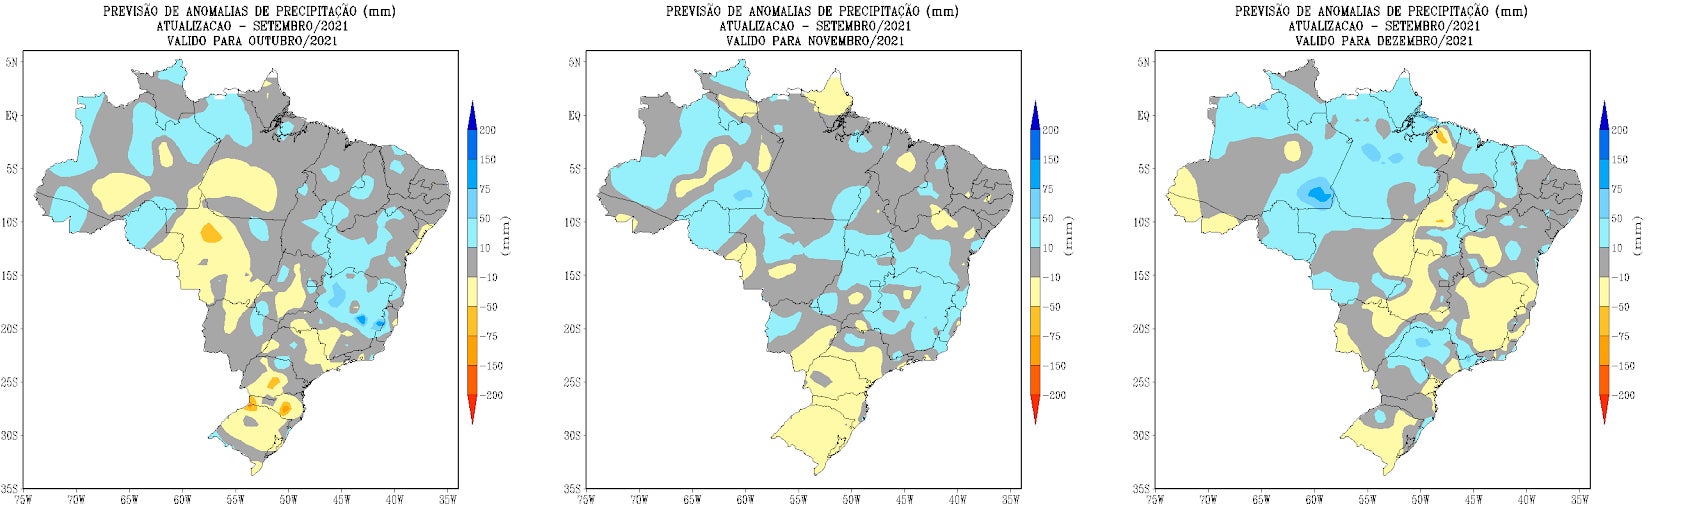 Mapas meteorológicos de previsões de anomalias de chuvas em outubro, novembro e dezembro de 2021, em milímetros, cujas colorações são azul acinzentadas distribuídas por todos os estados do Brasil, e amarelo claro, mais concentrado nas regiões sul, dentro oeste e de Minas Gerais.